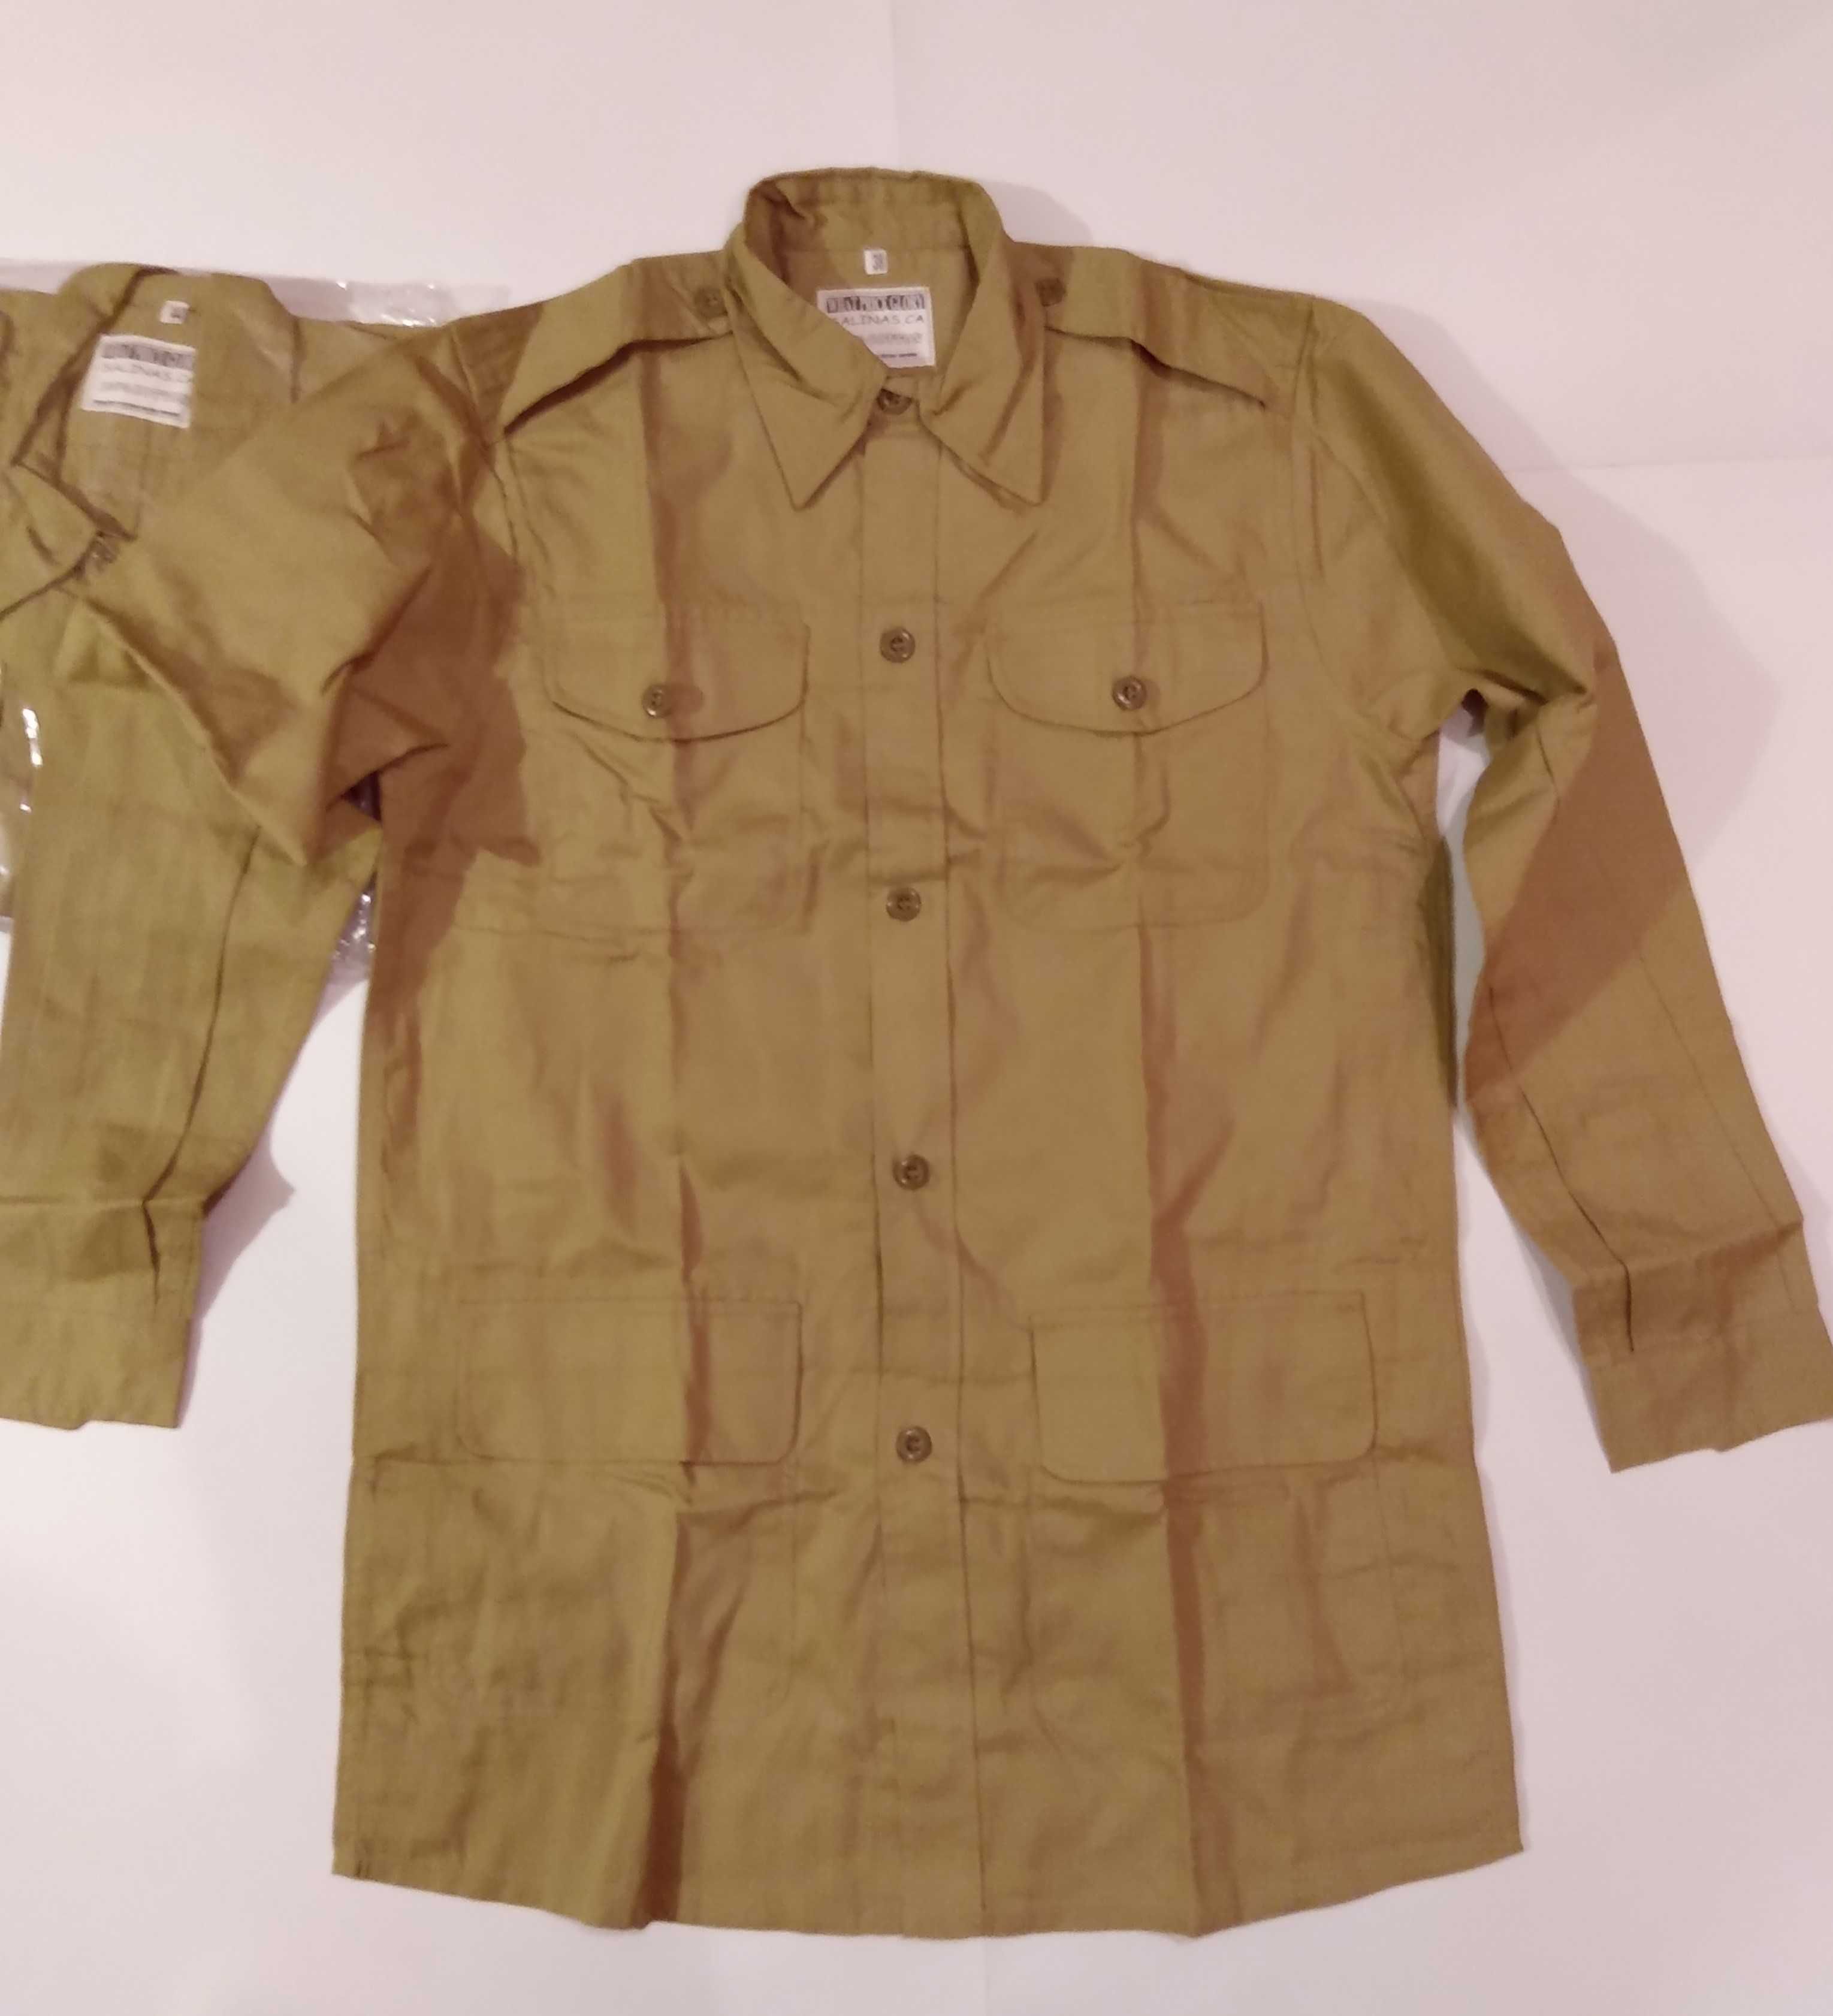 Bush Jacket KD, Khaki Drill, mundur tropikalny, brytyjski